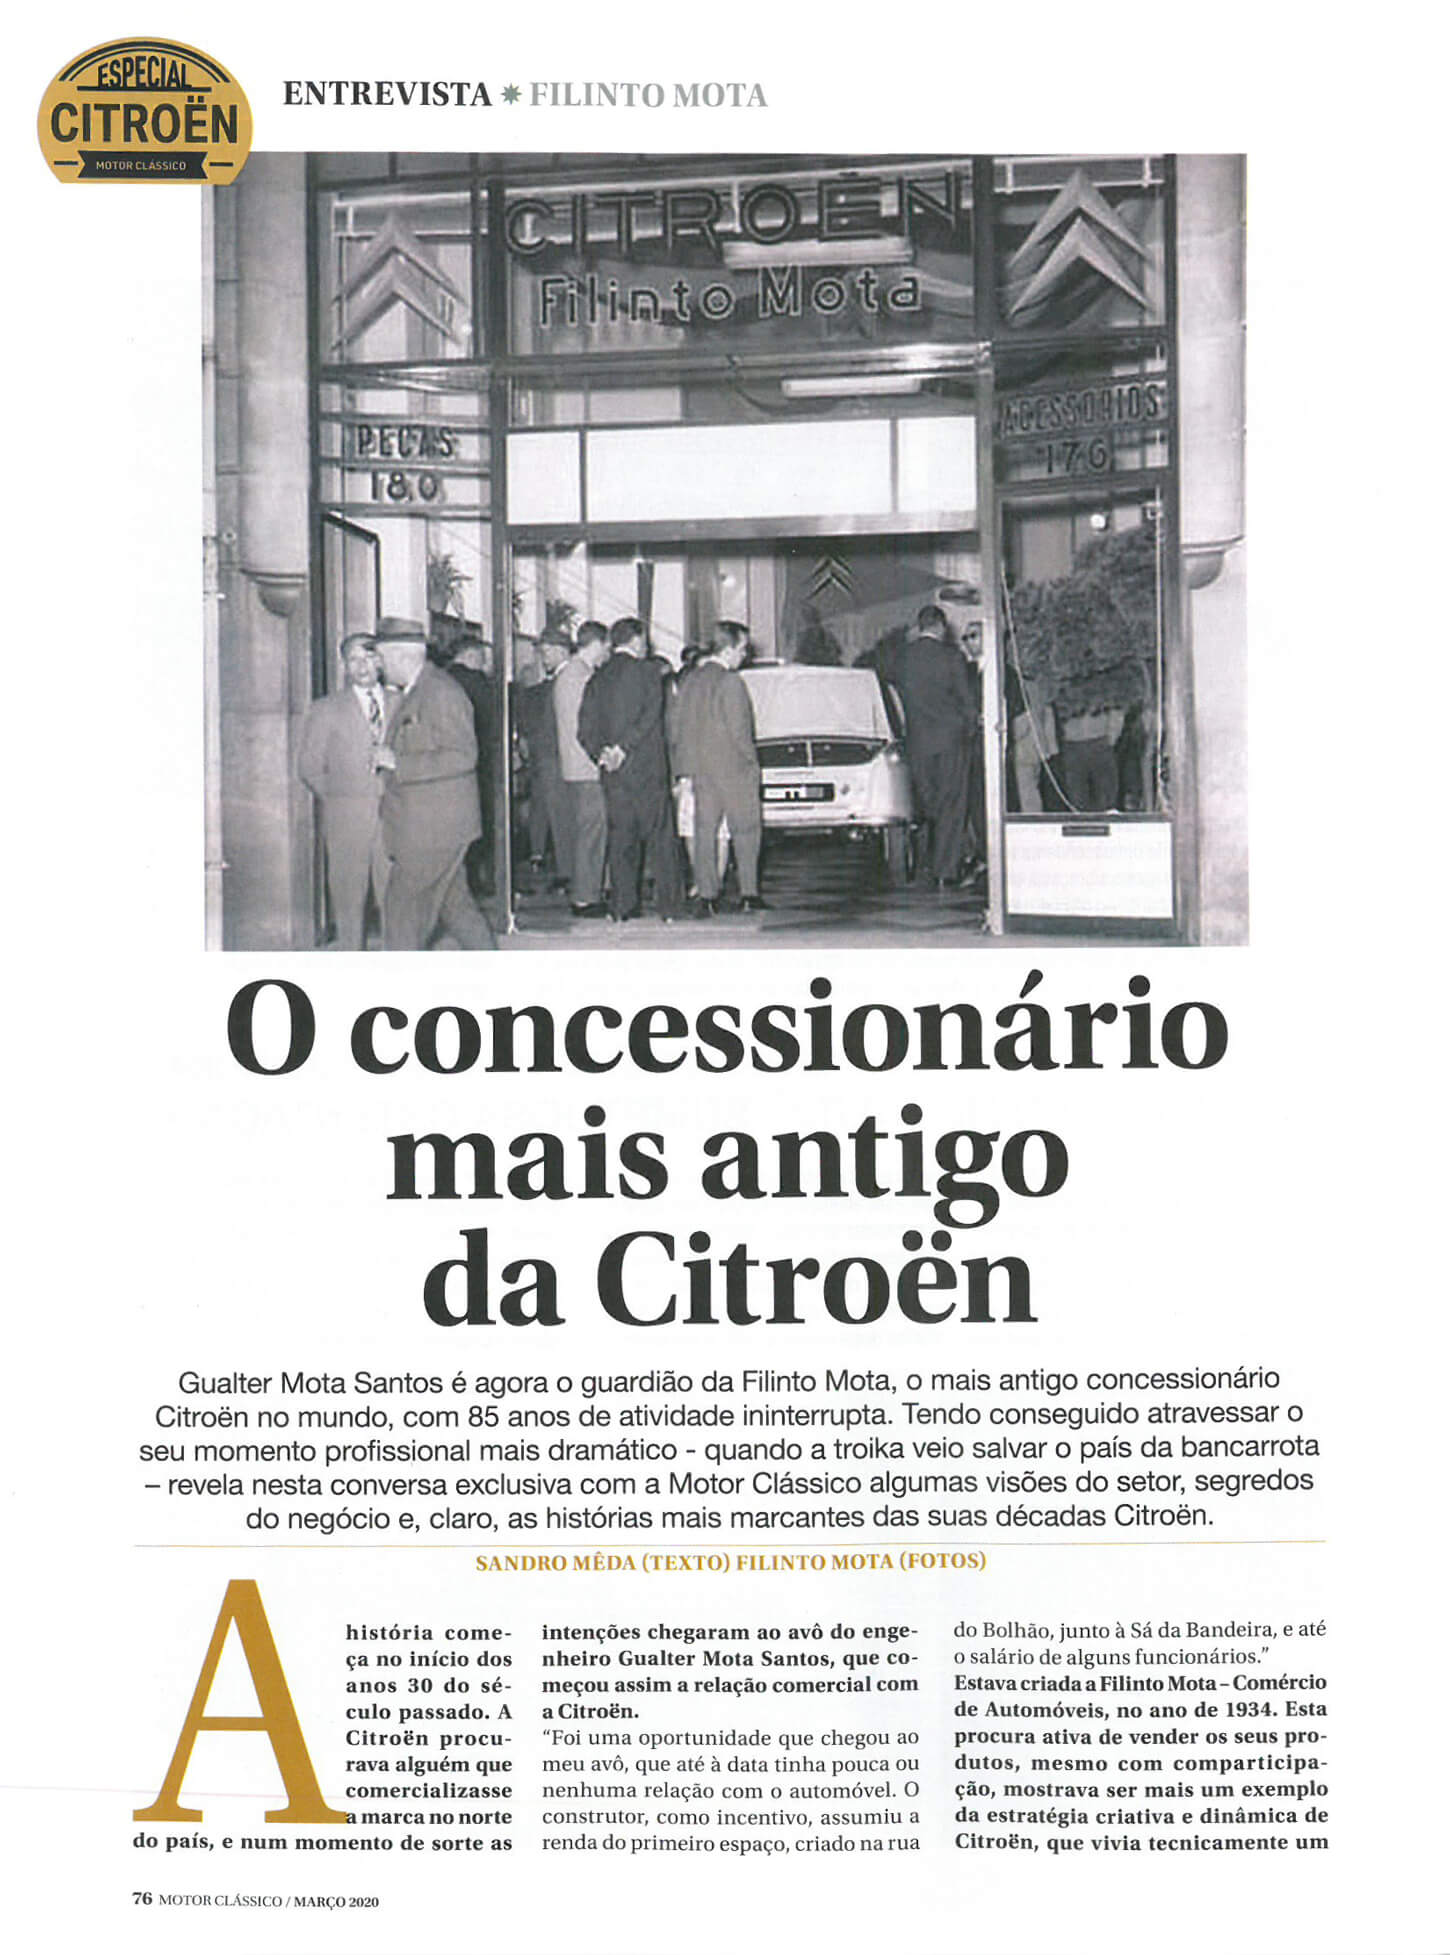 Concessionário Citroën mais antigo do mundo